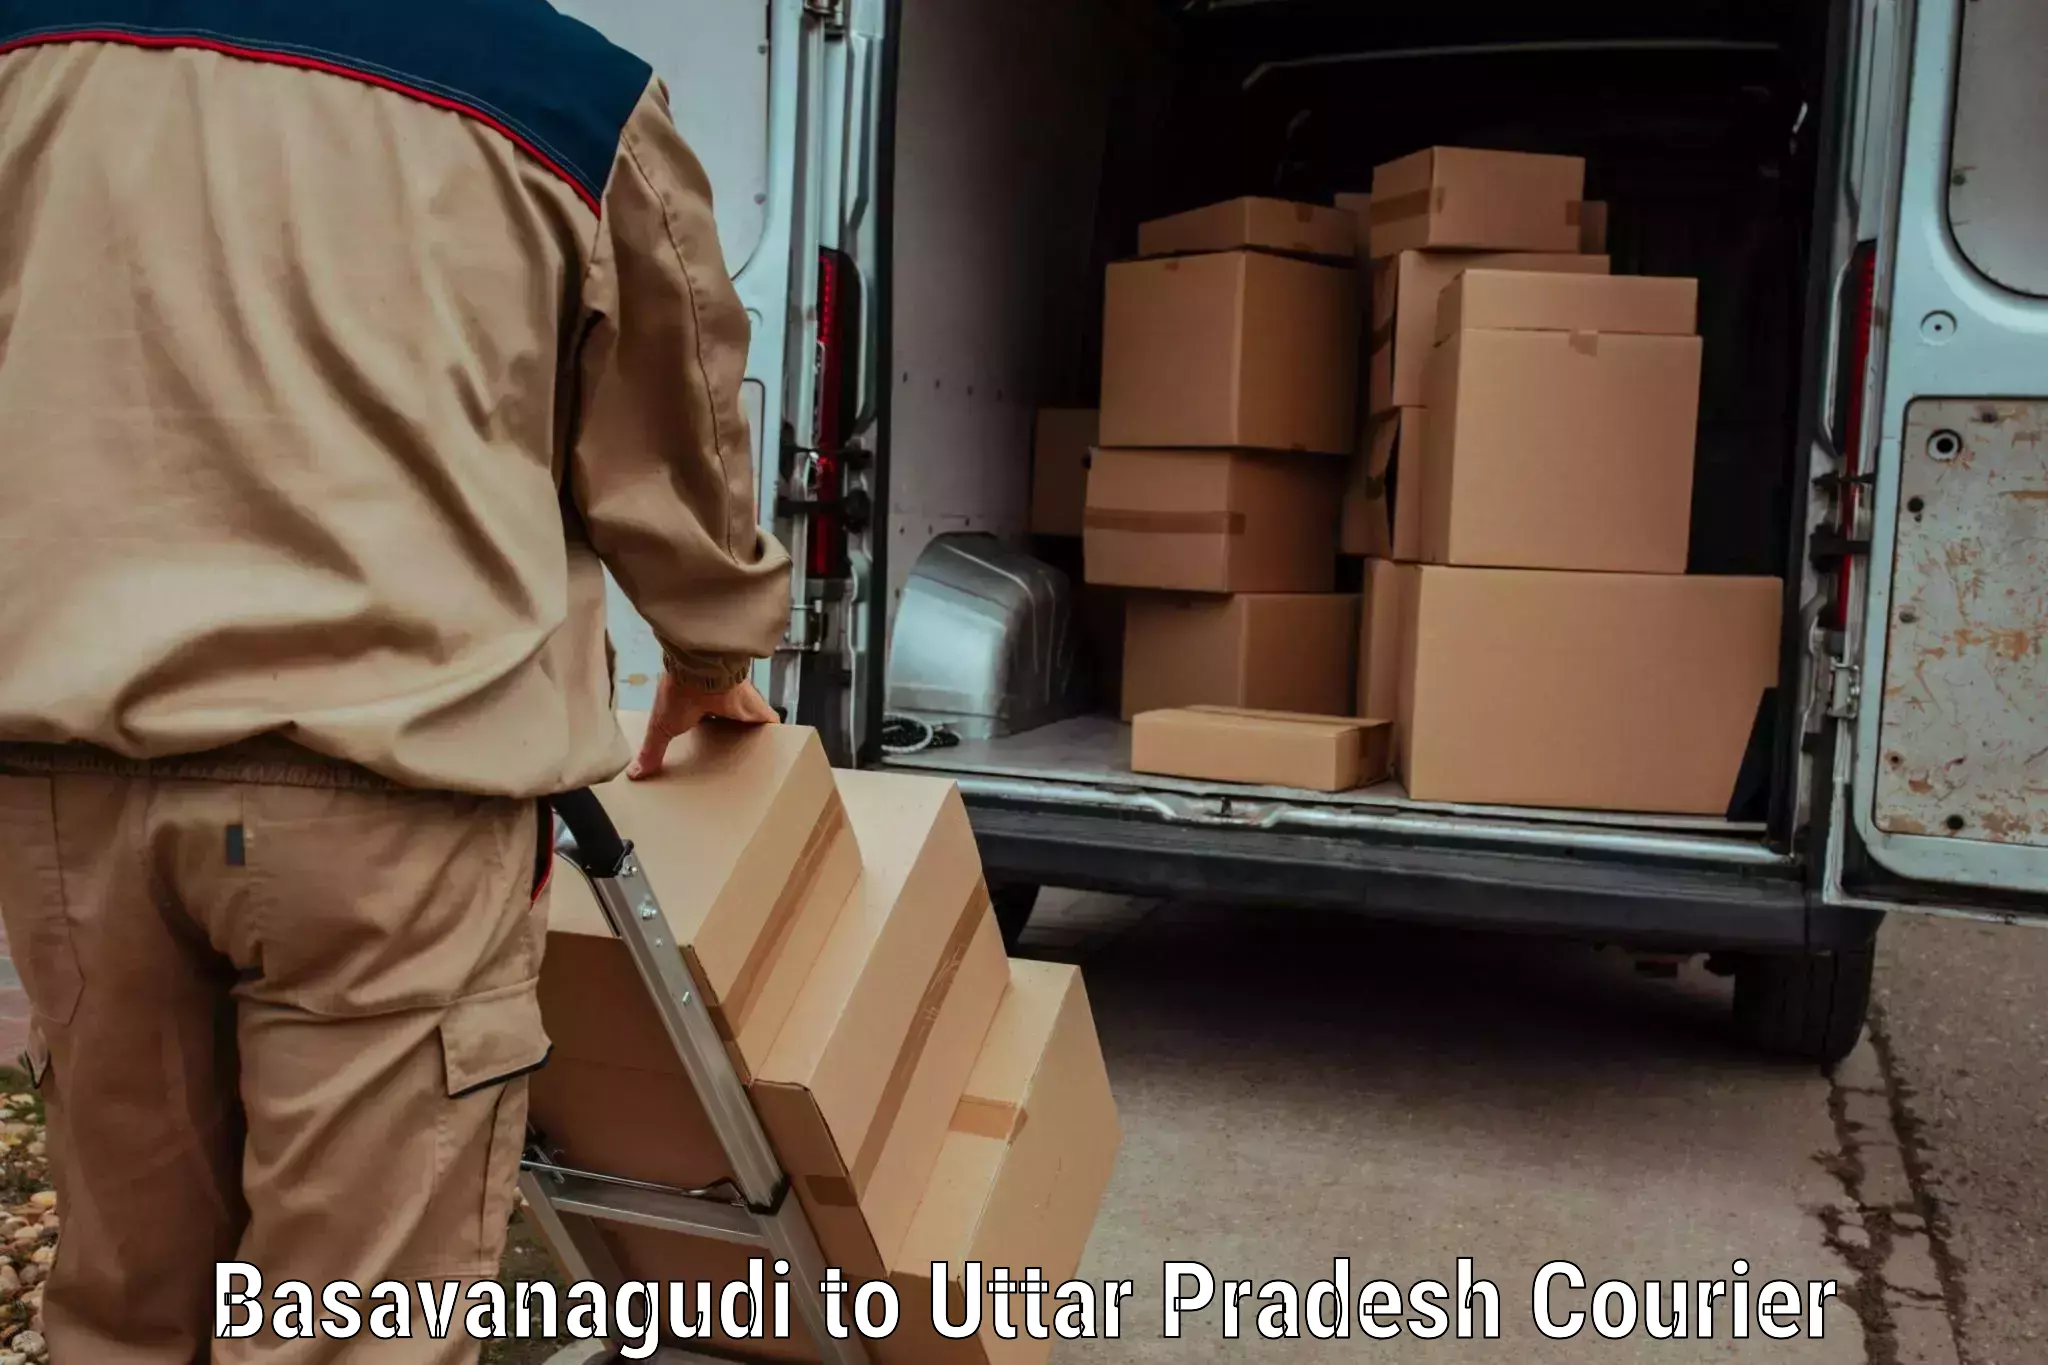 Baggage transport innovation Basavanagudi to Uttar Pradesh